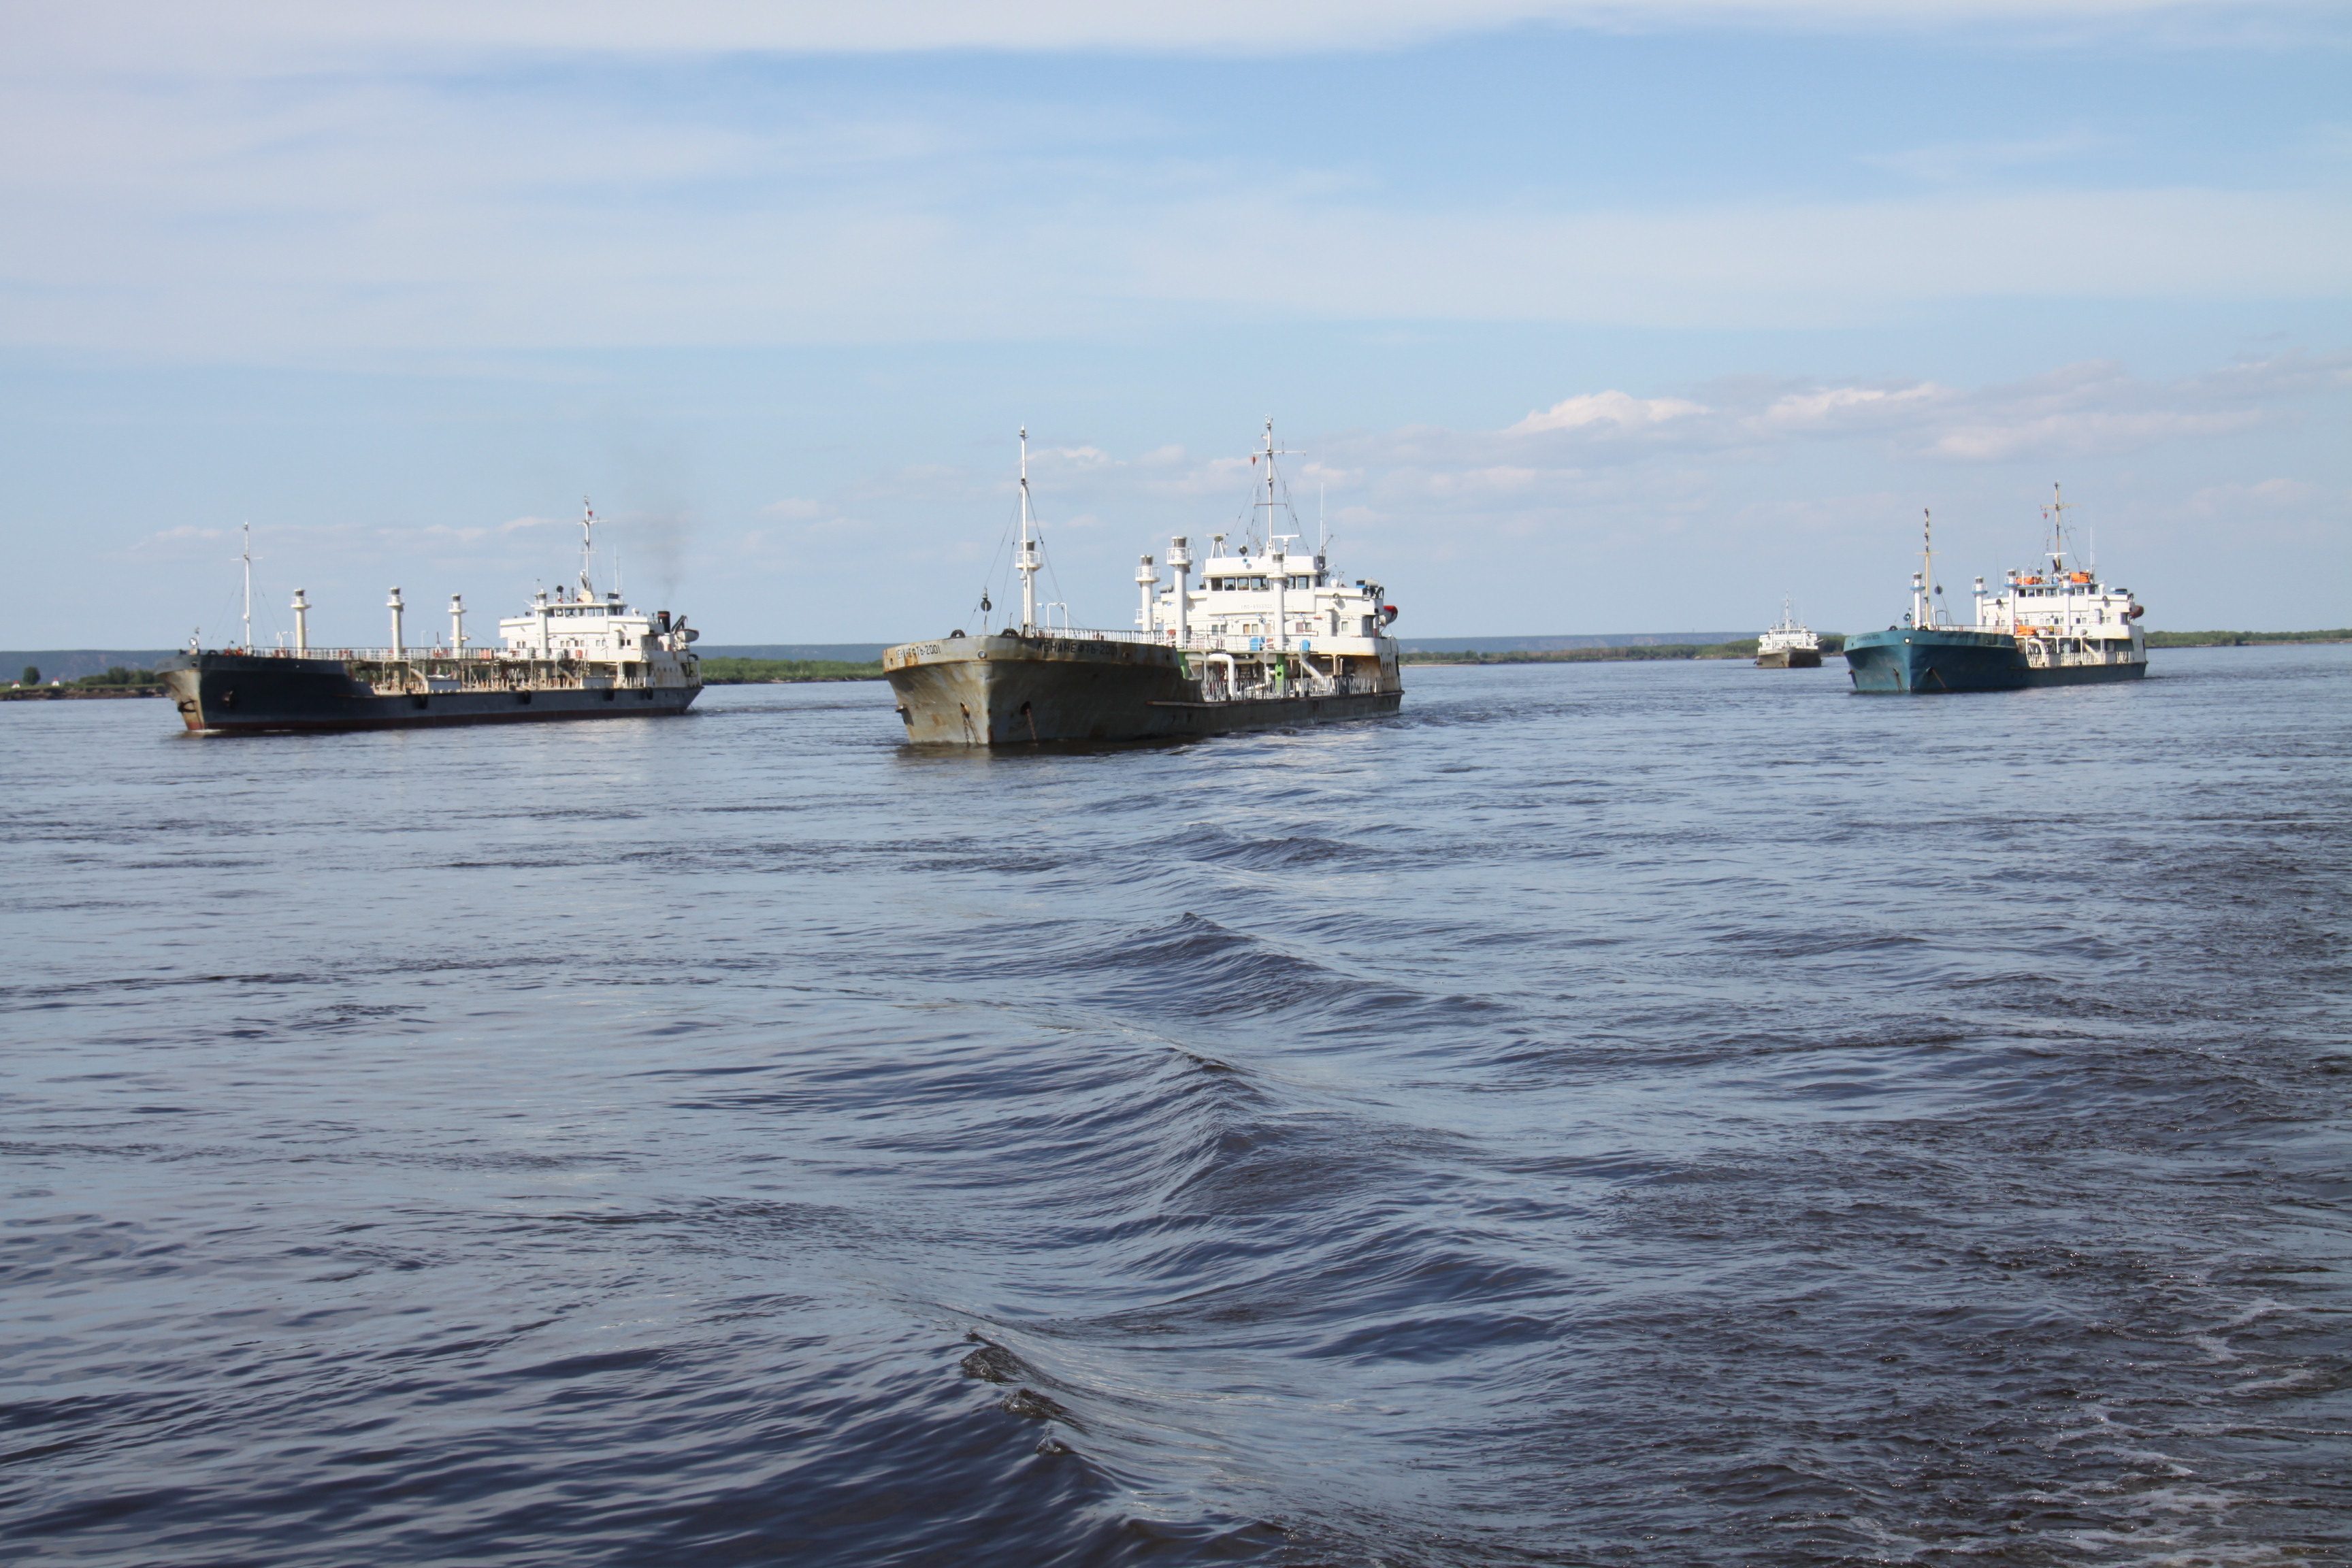 Речники Ленского пароходства доставили за навигацию 1,2 миллиона тонн грузов